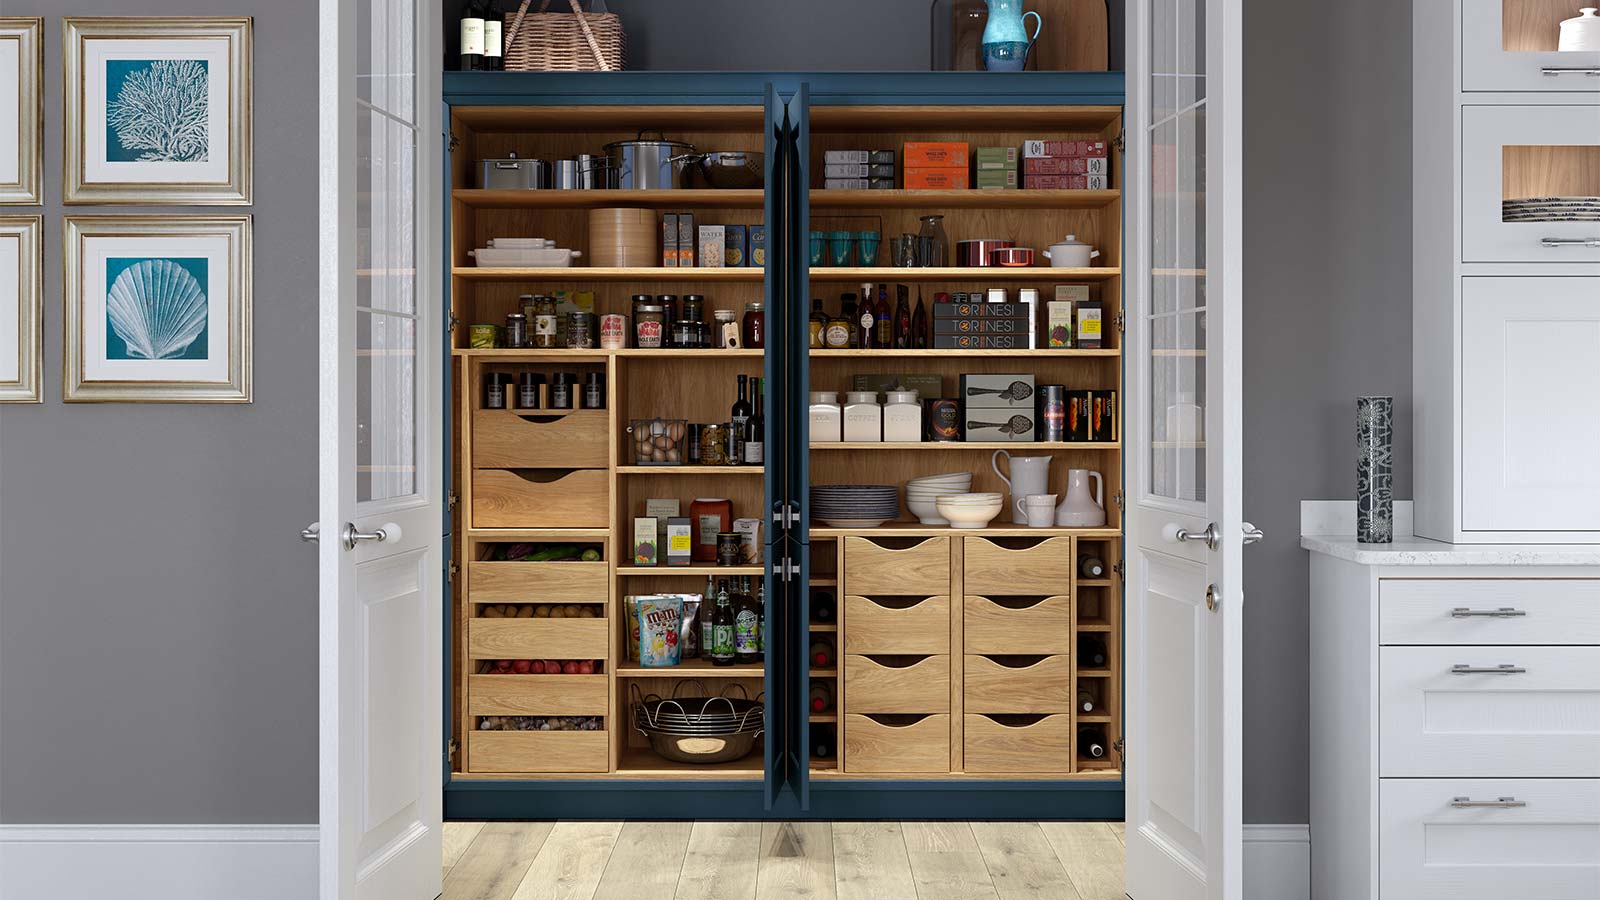 Walk-in pantry cupboard used as food storage cabinet